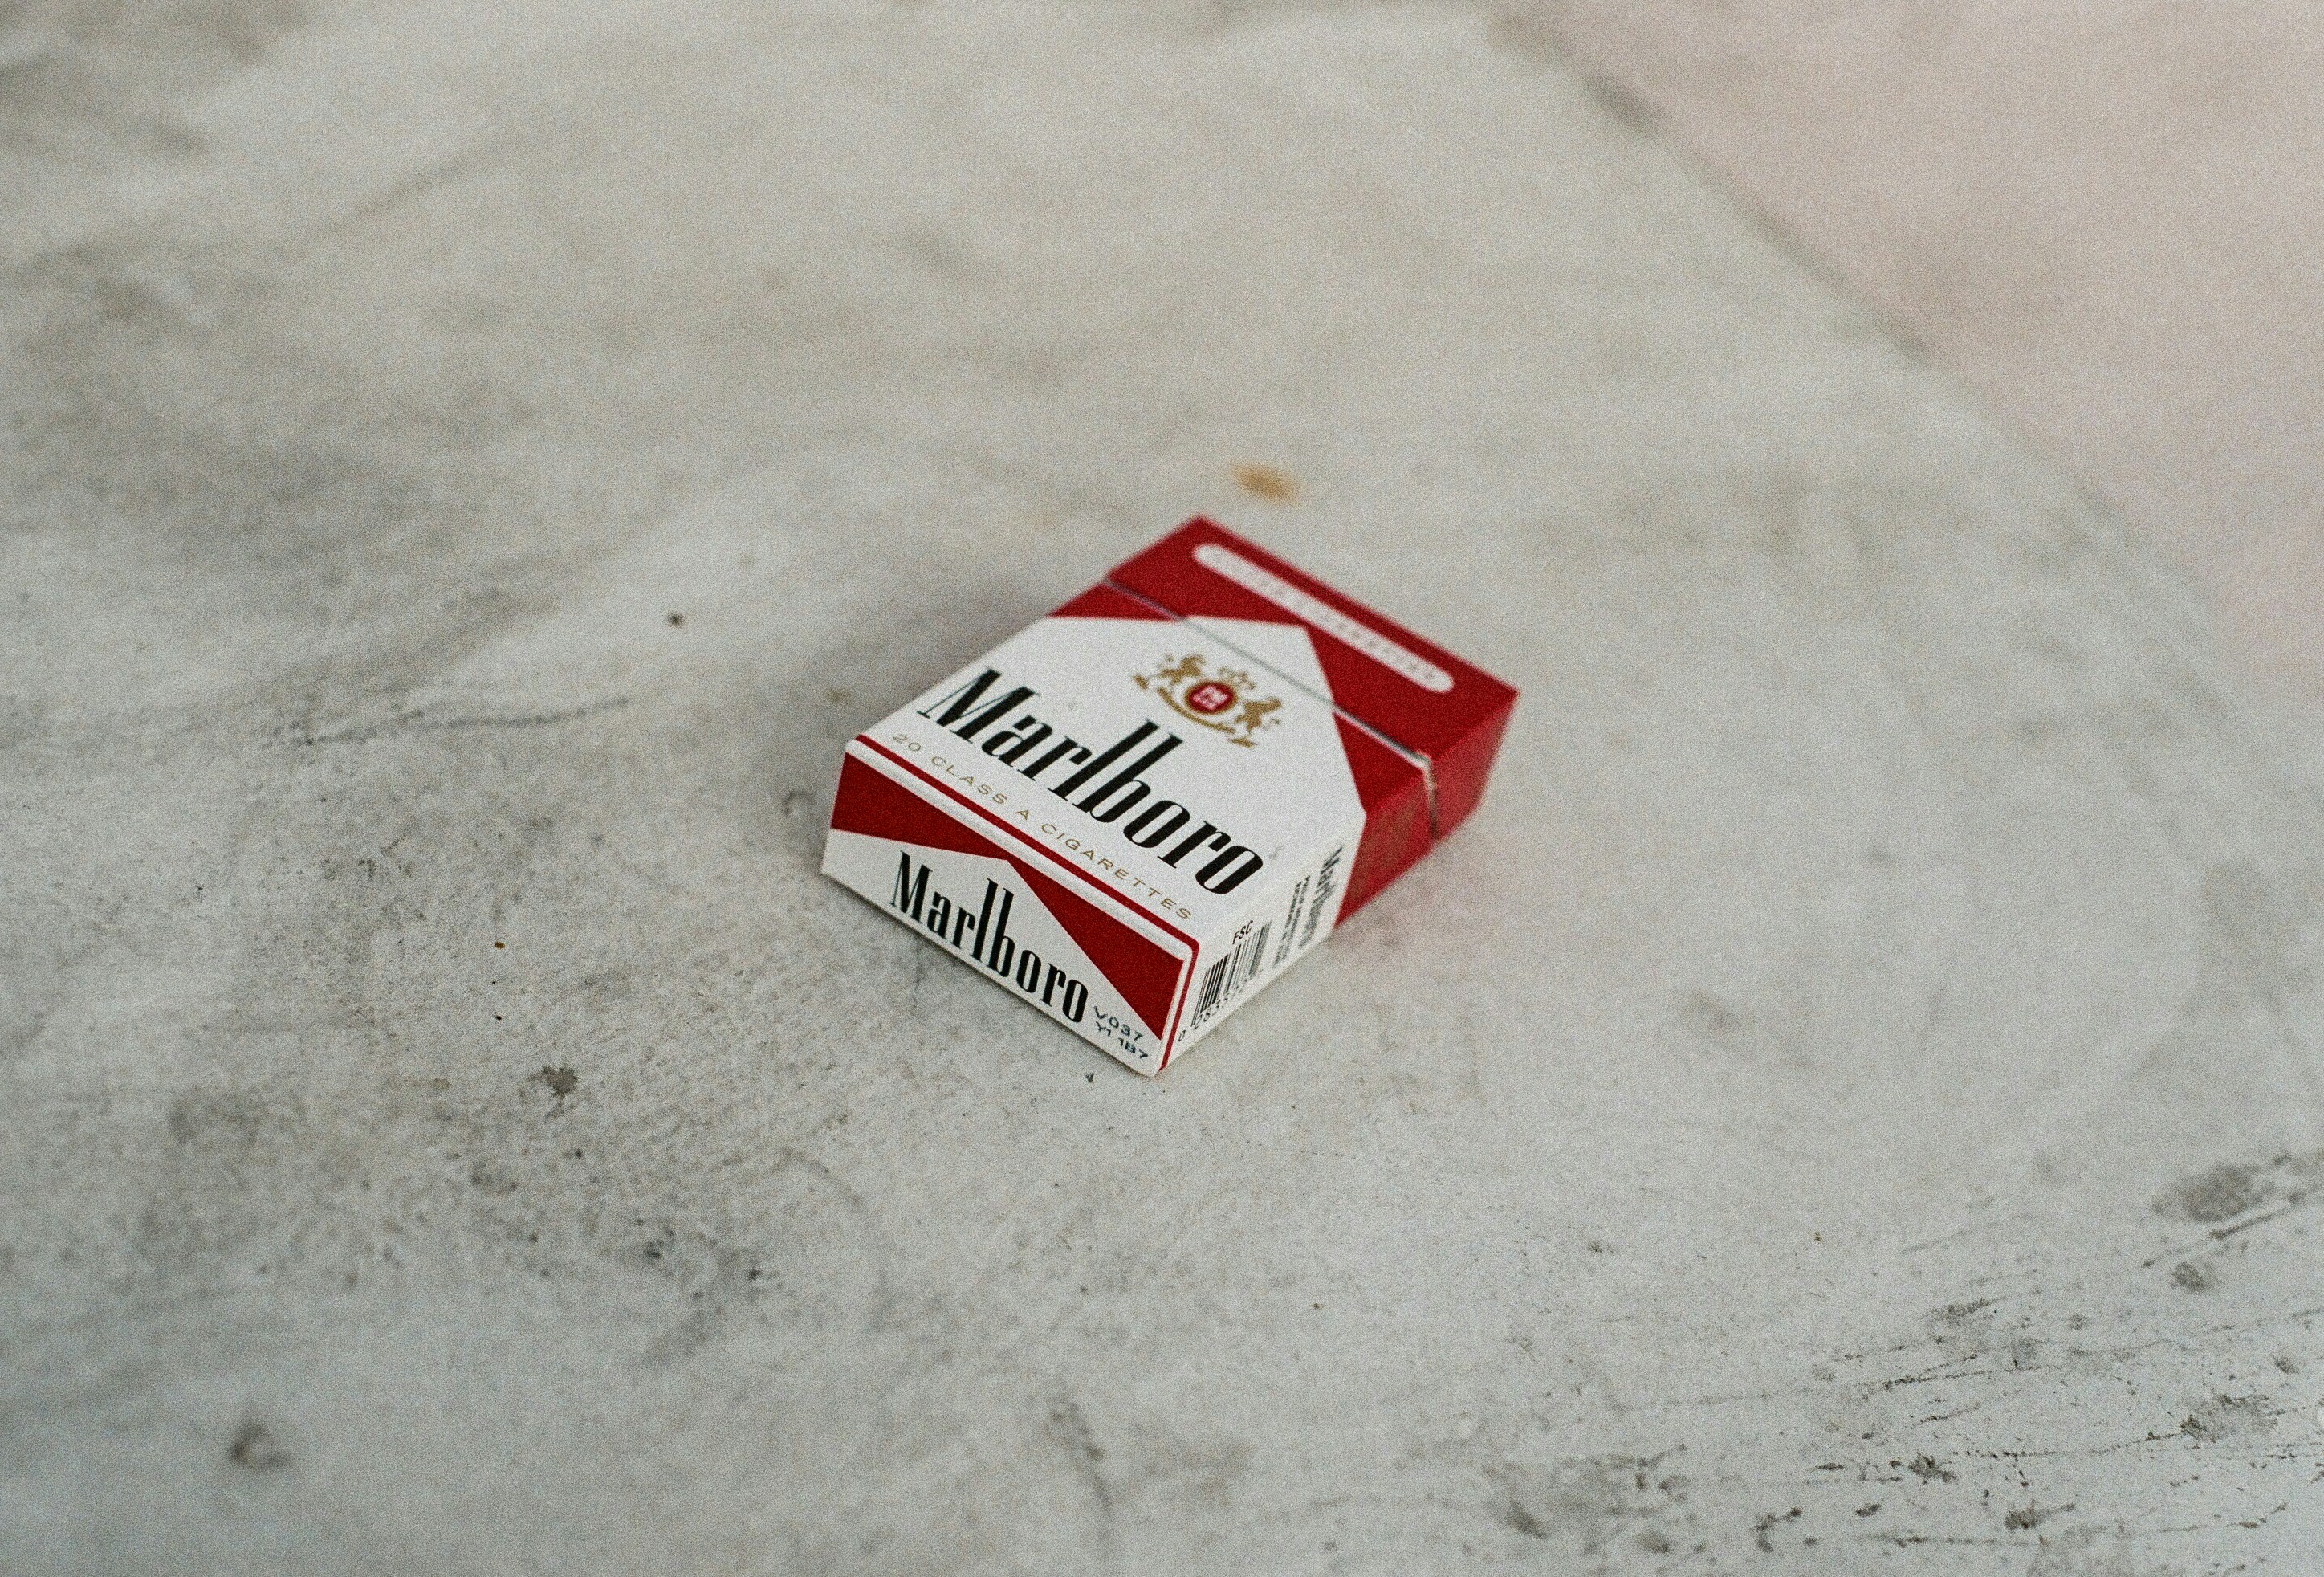 Reds.<br />Marlboro.<br />Smoke.<br />Cigarettes.